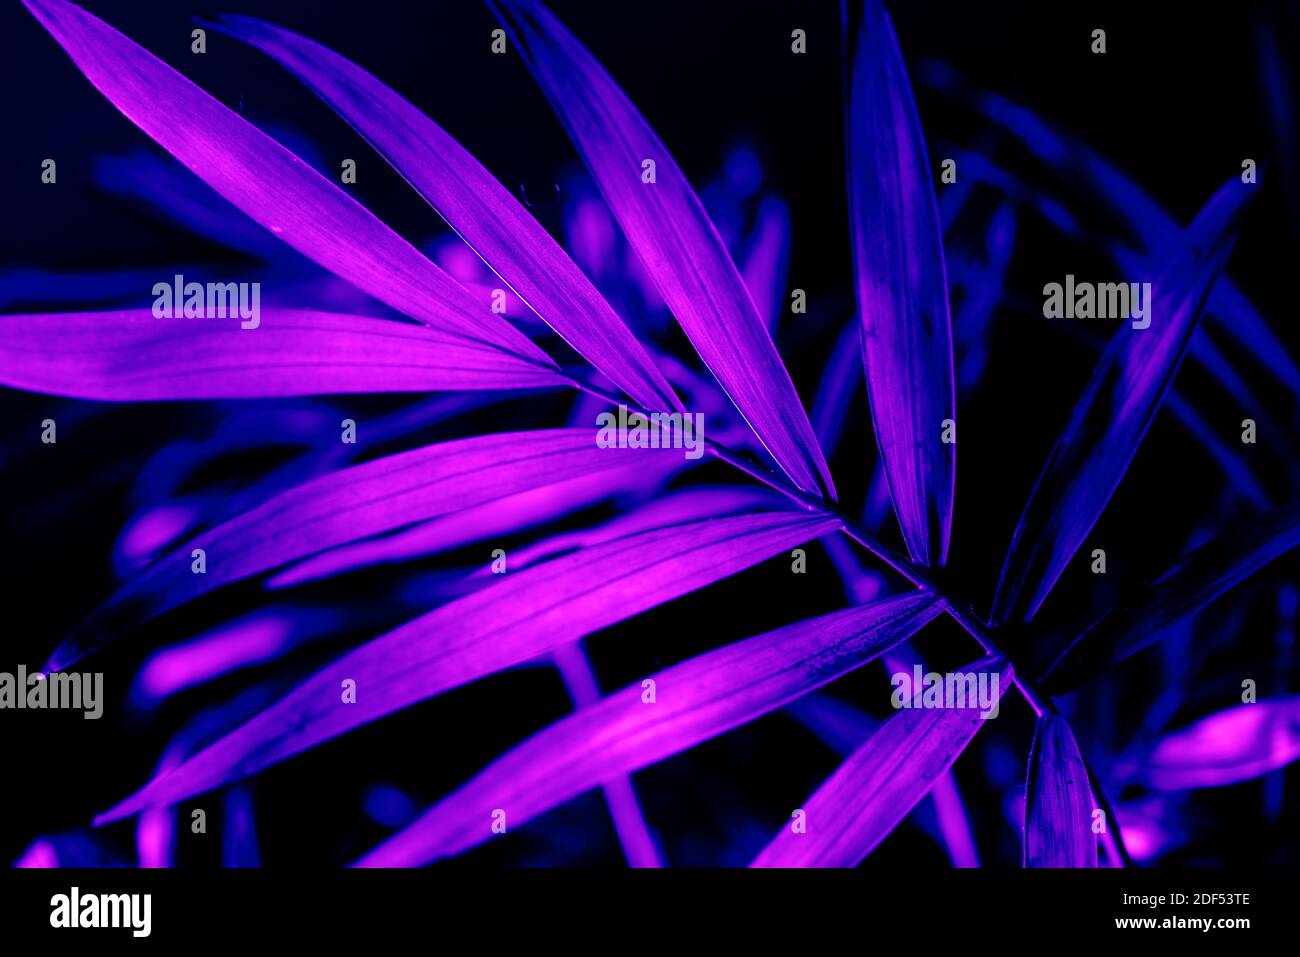 Gros plan sur une feuille de palmier fluo sur fond sombre. Aménagement de feuillage de jungle exotique violet. Papier peint à texture florale et dynamique. Banque D'Images